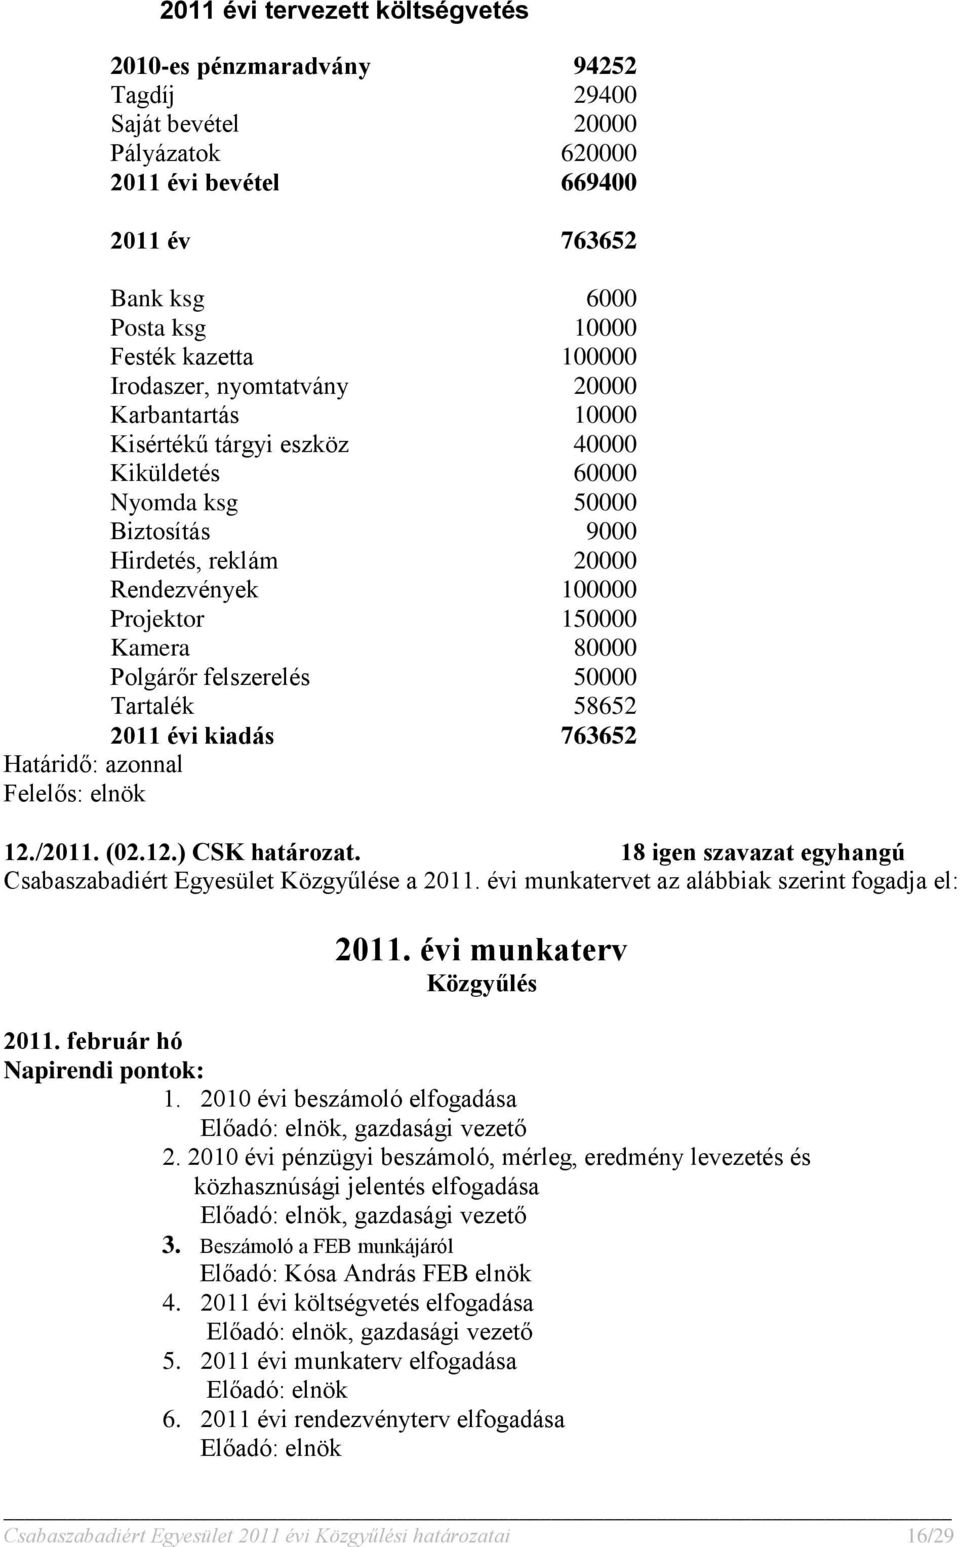 Kamera 80000 Polgárőr felszerelés 50000 Tartalék 58652 2011 évi kiadás 763652 12./2011. (02.12.) CSK határozat. 18 igen szavazat egyhangú Csabaszabadiért Egyesület Közgyűlése a 2011.